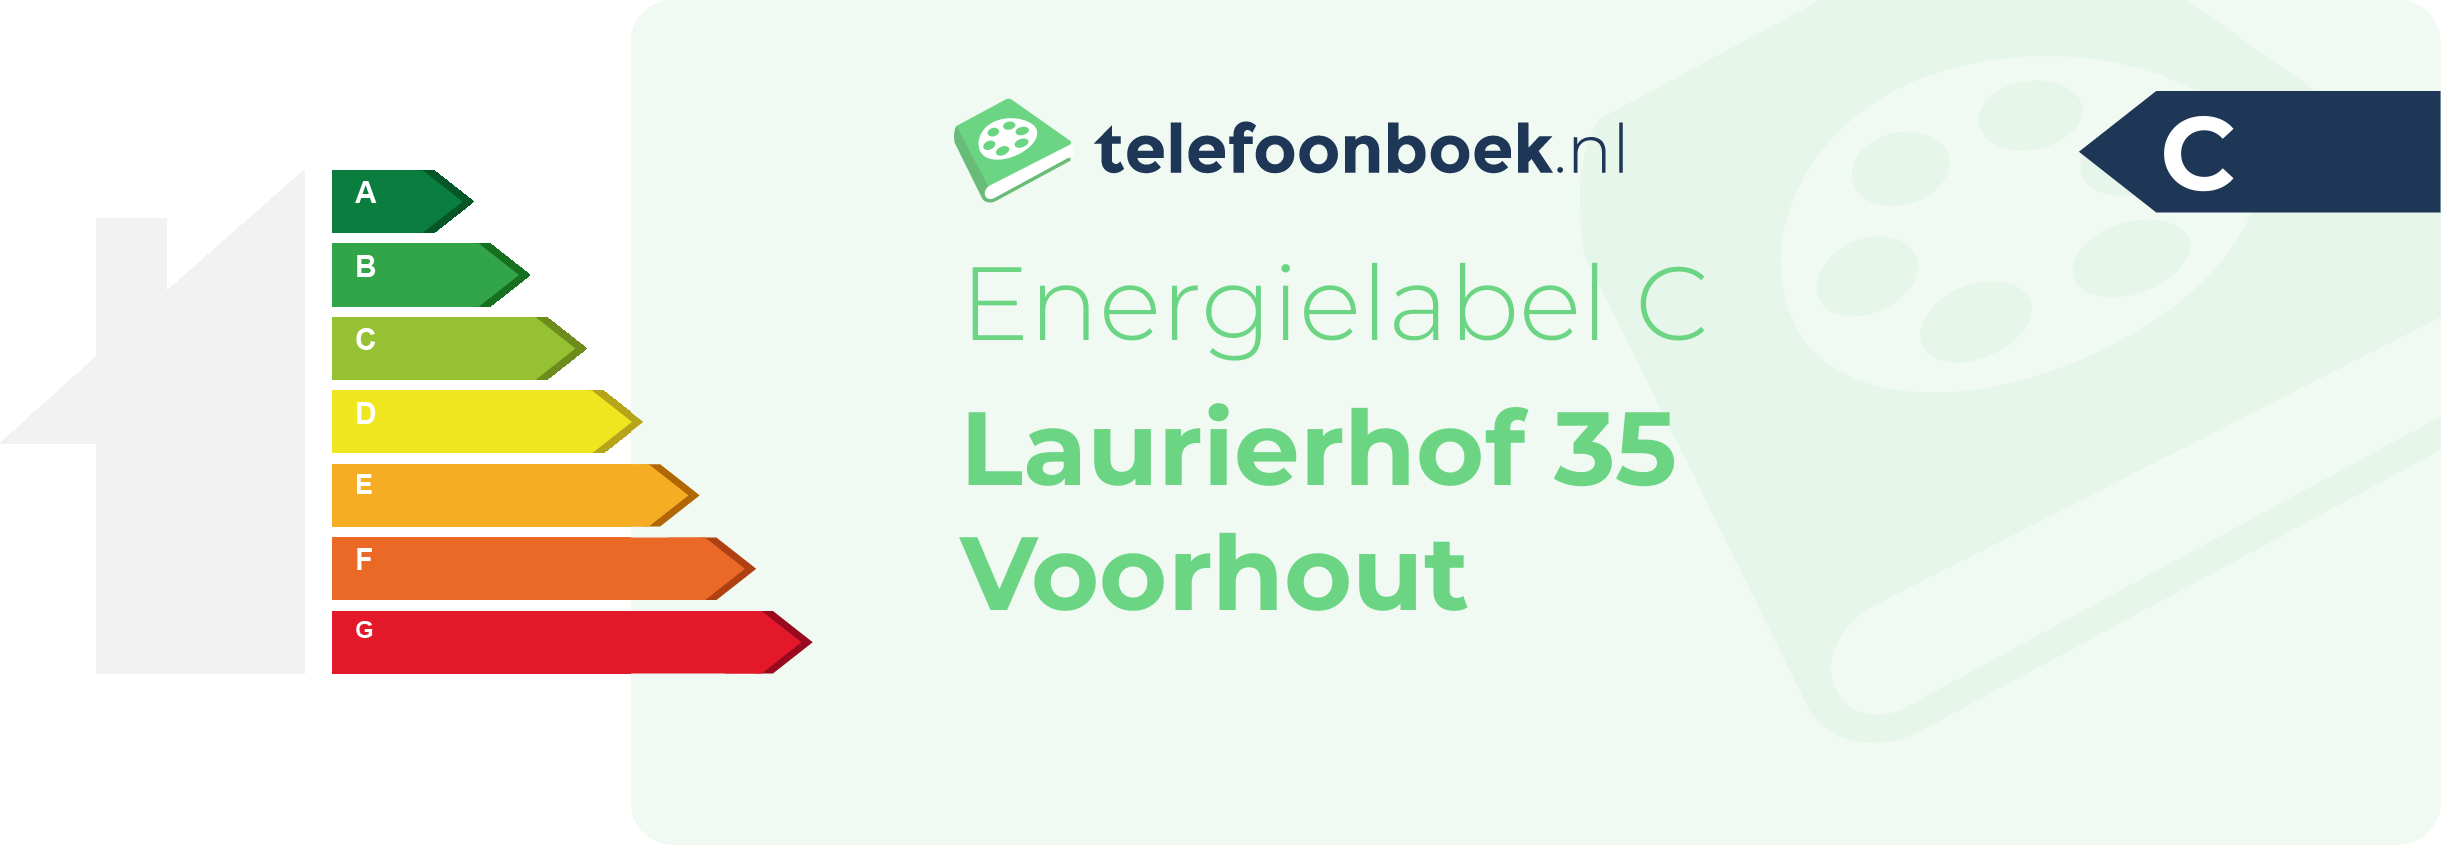 Energielabel Laurierhof 35 Voorhout